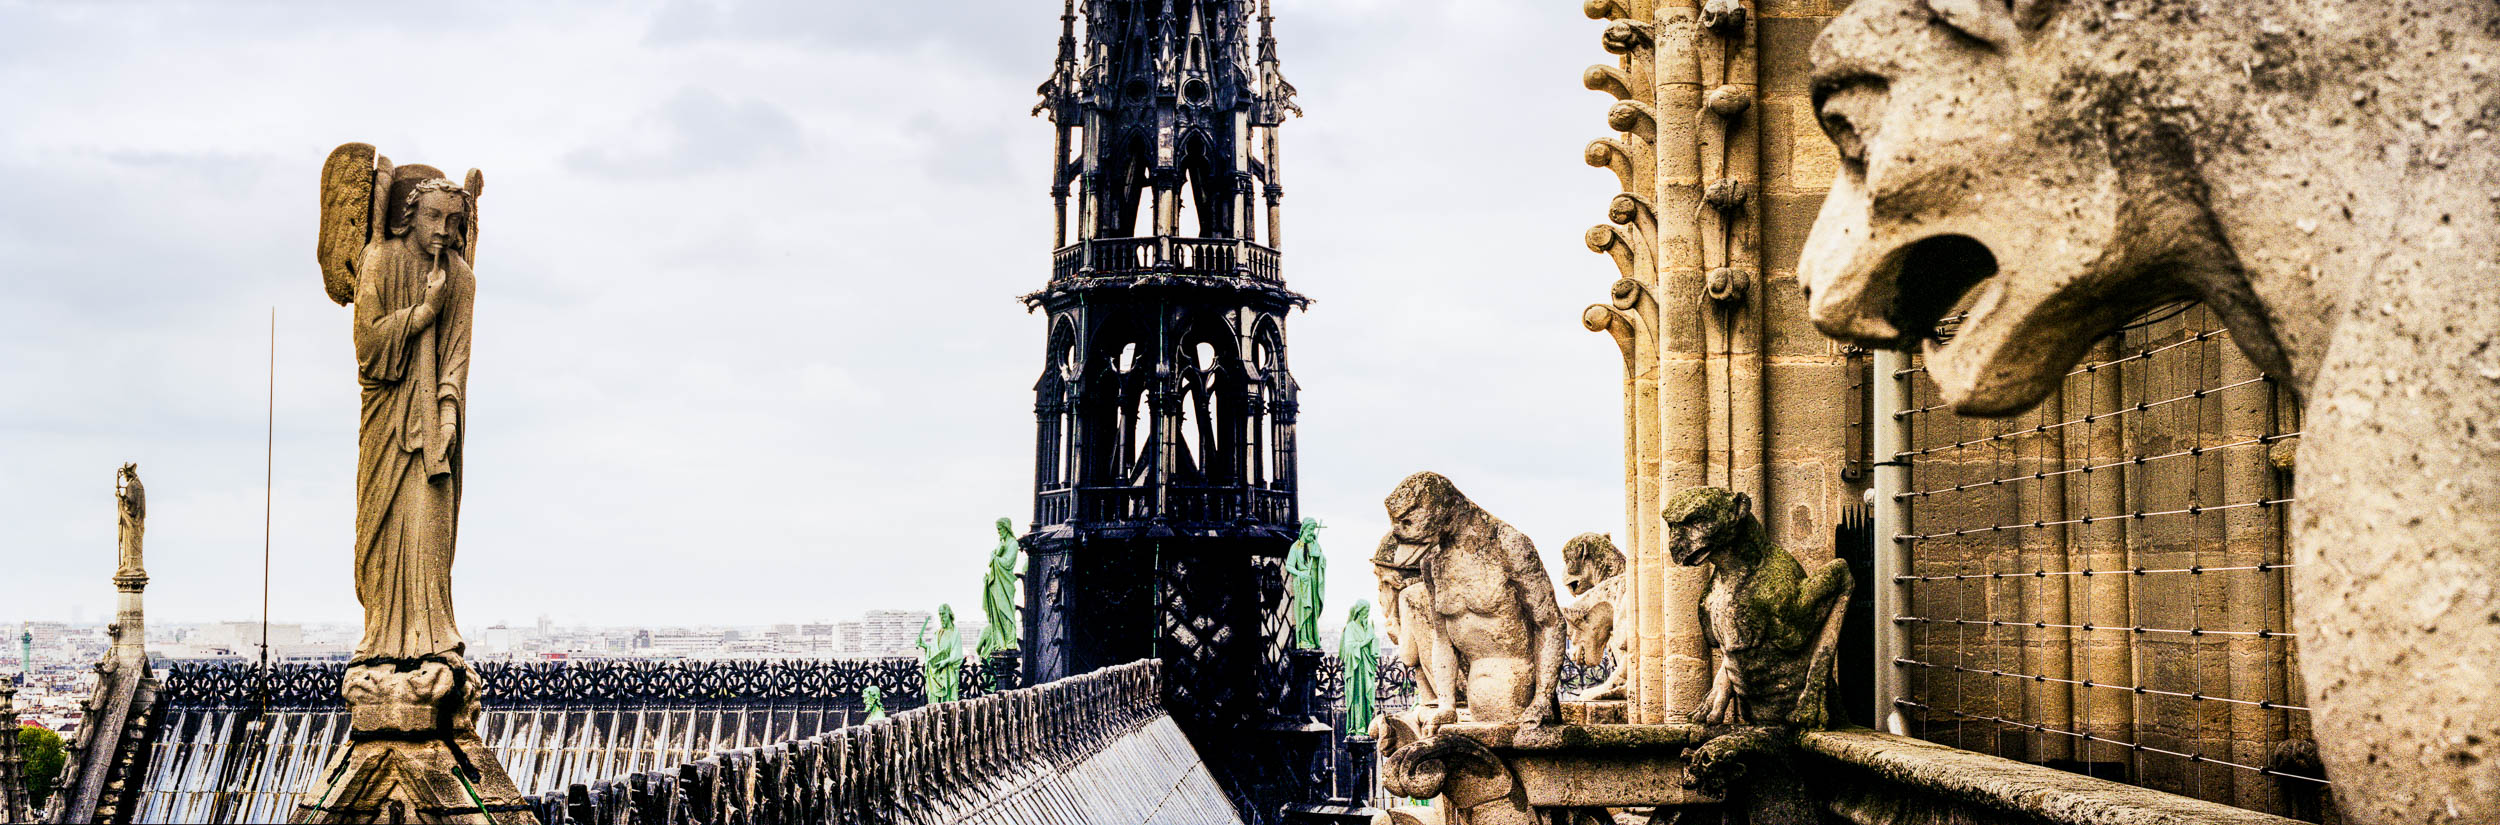 Roof of Notre Dame, Paris